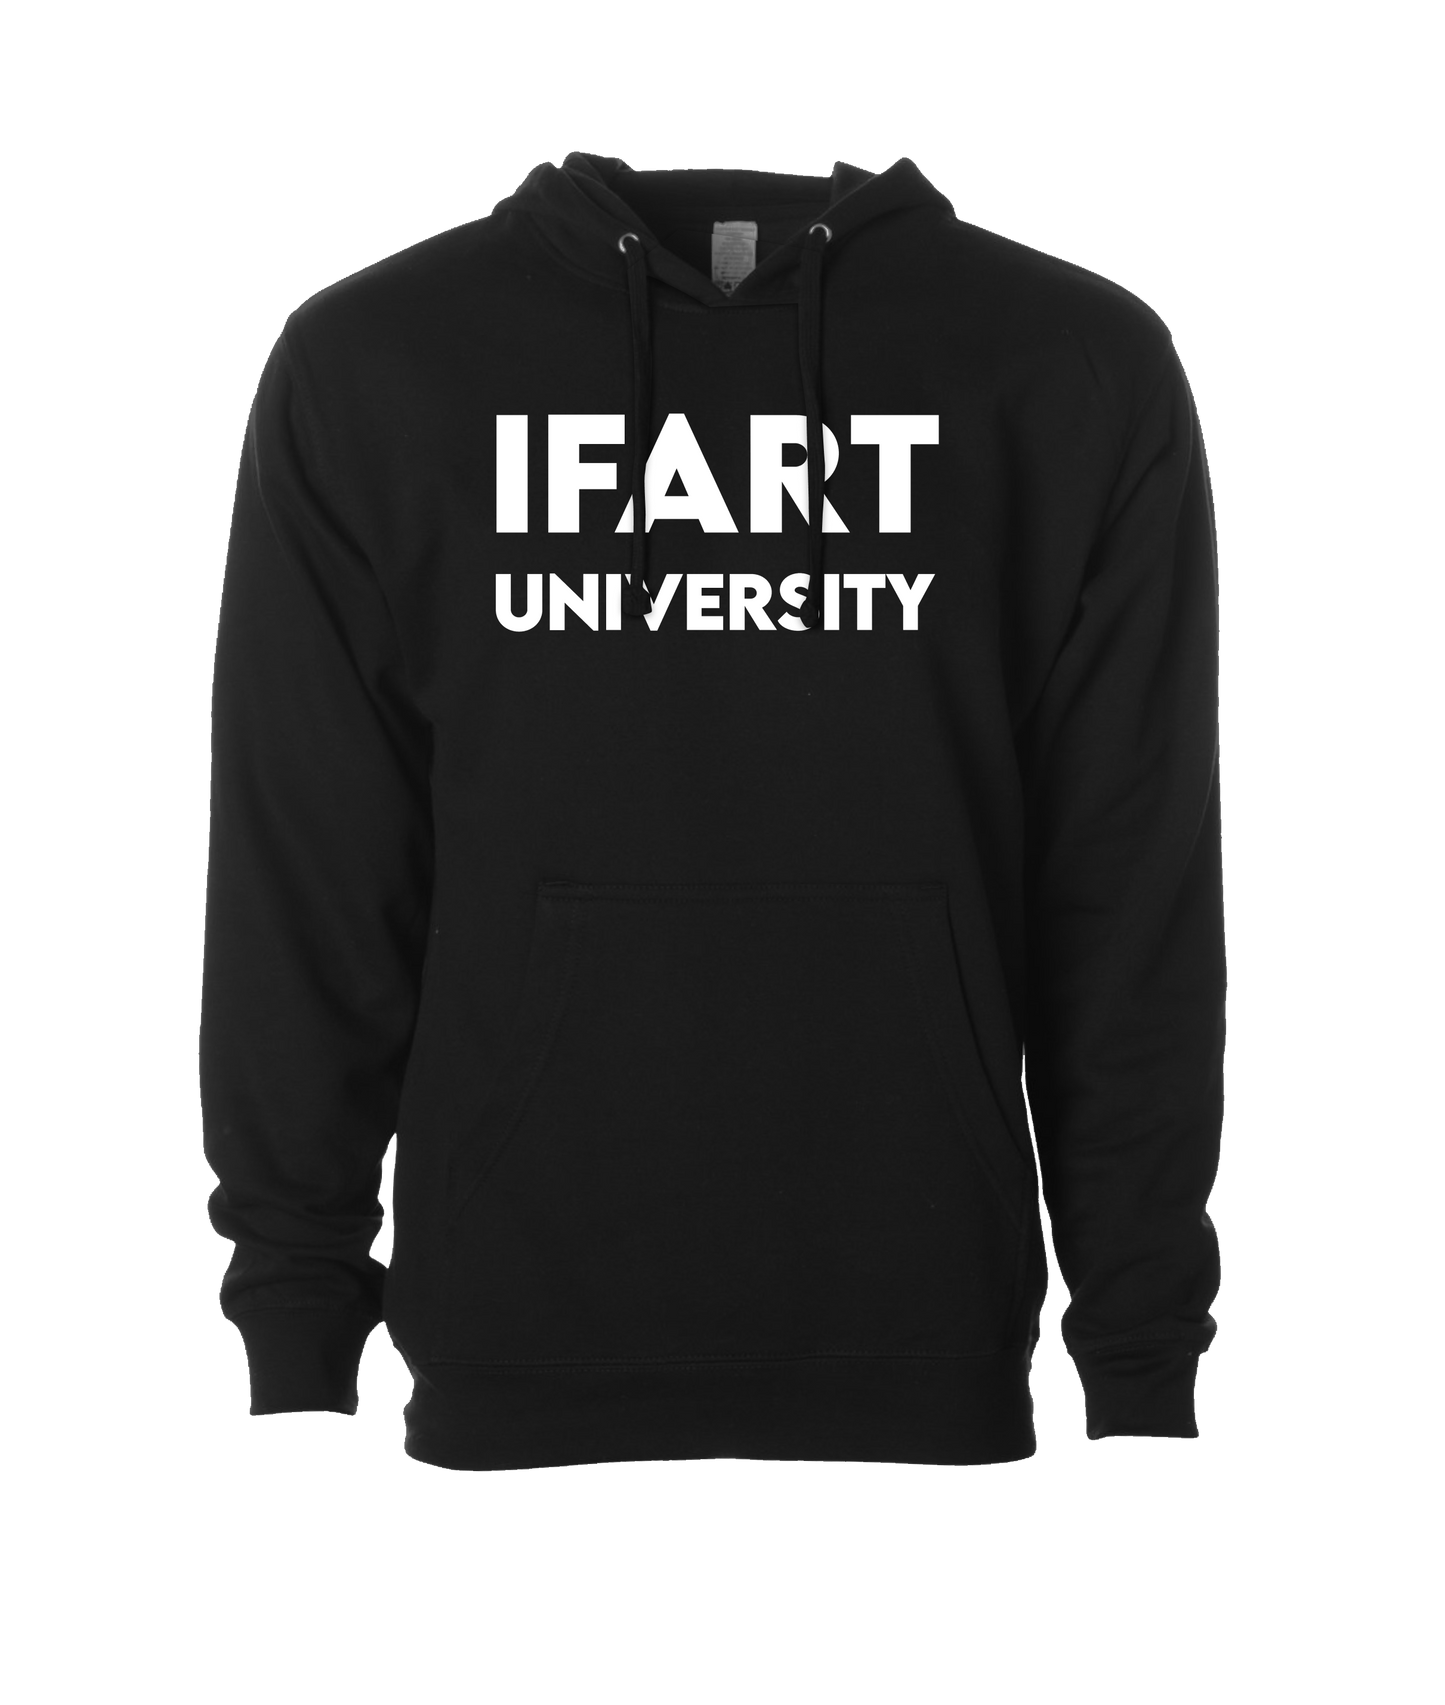 iFart - UNIVERSITY - Black Hoodie